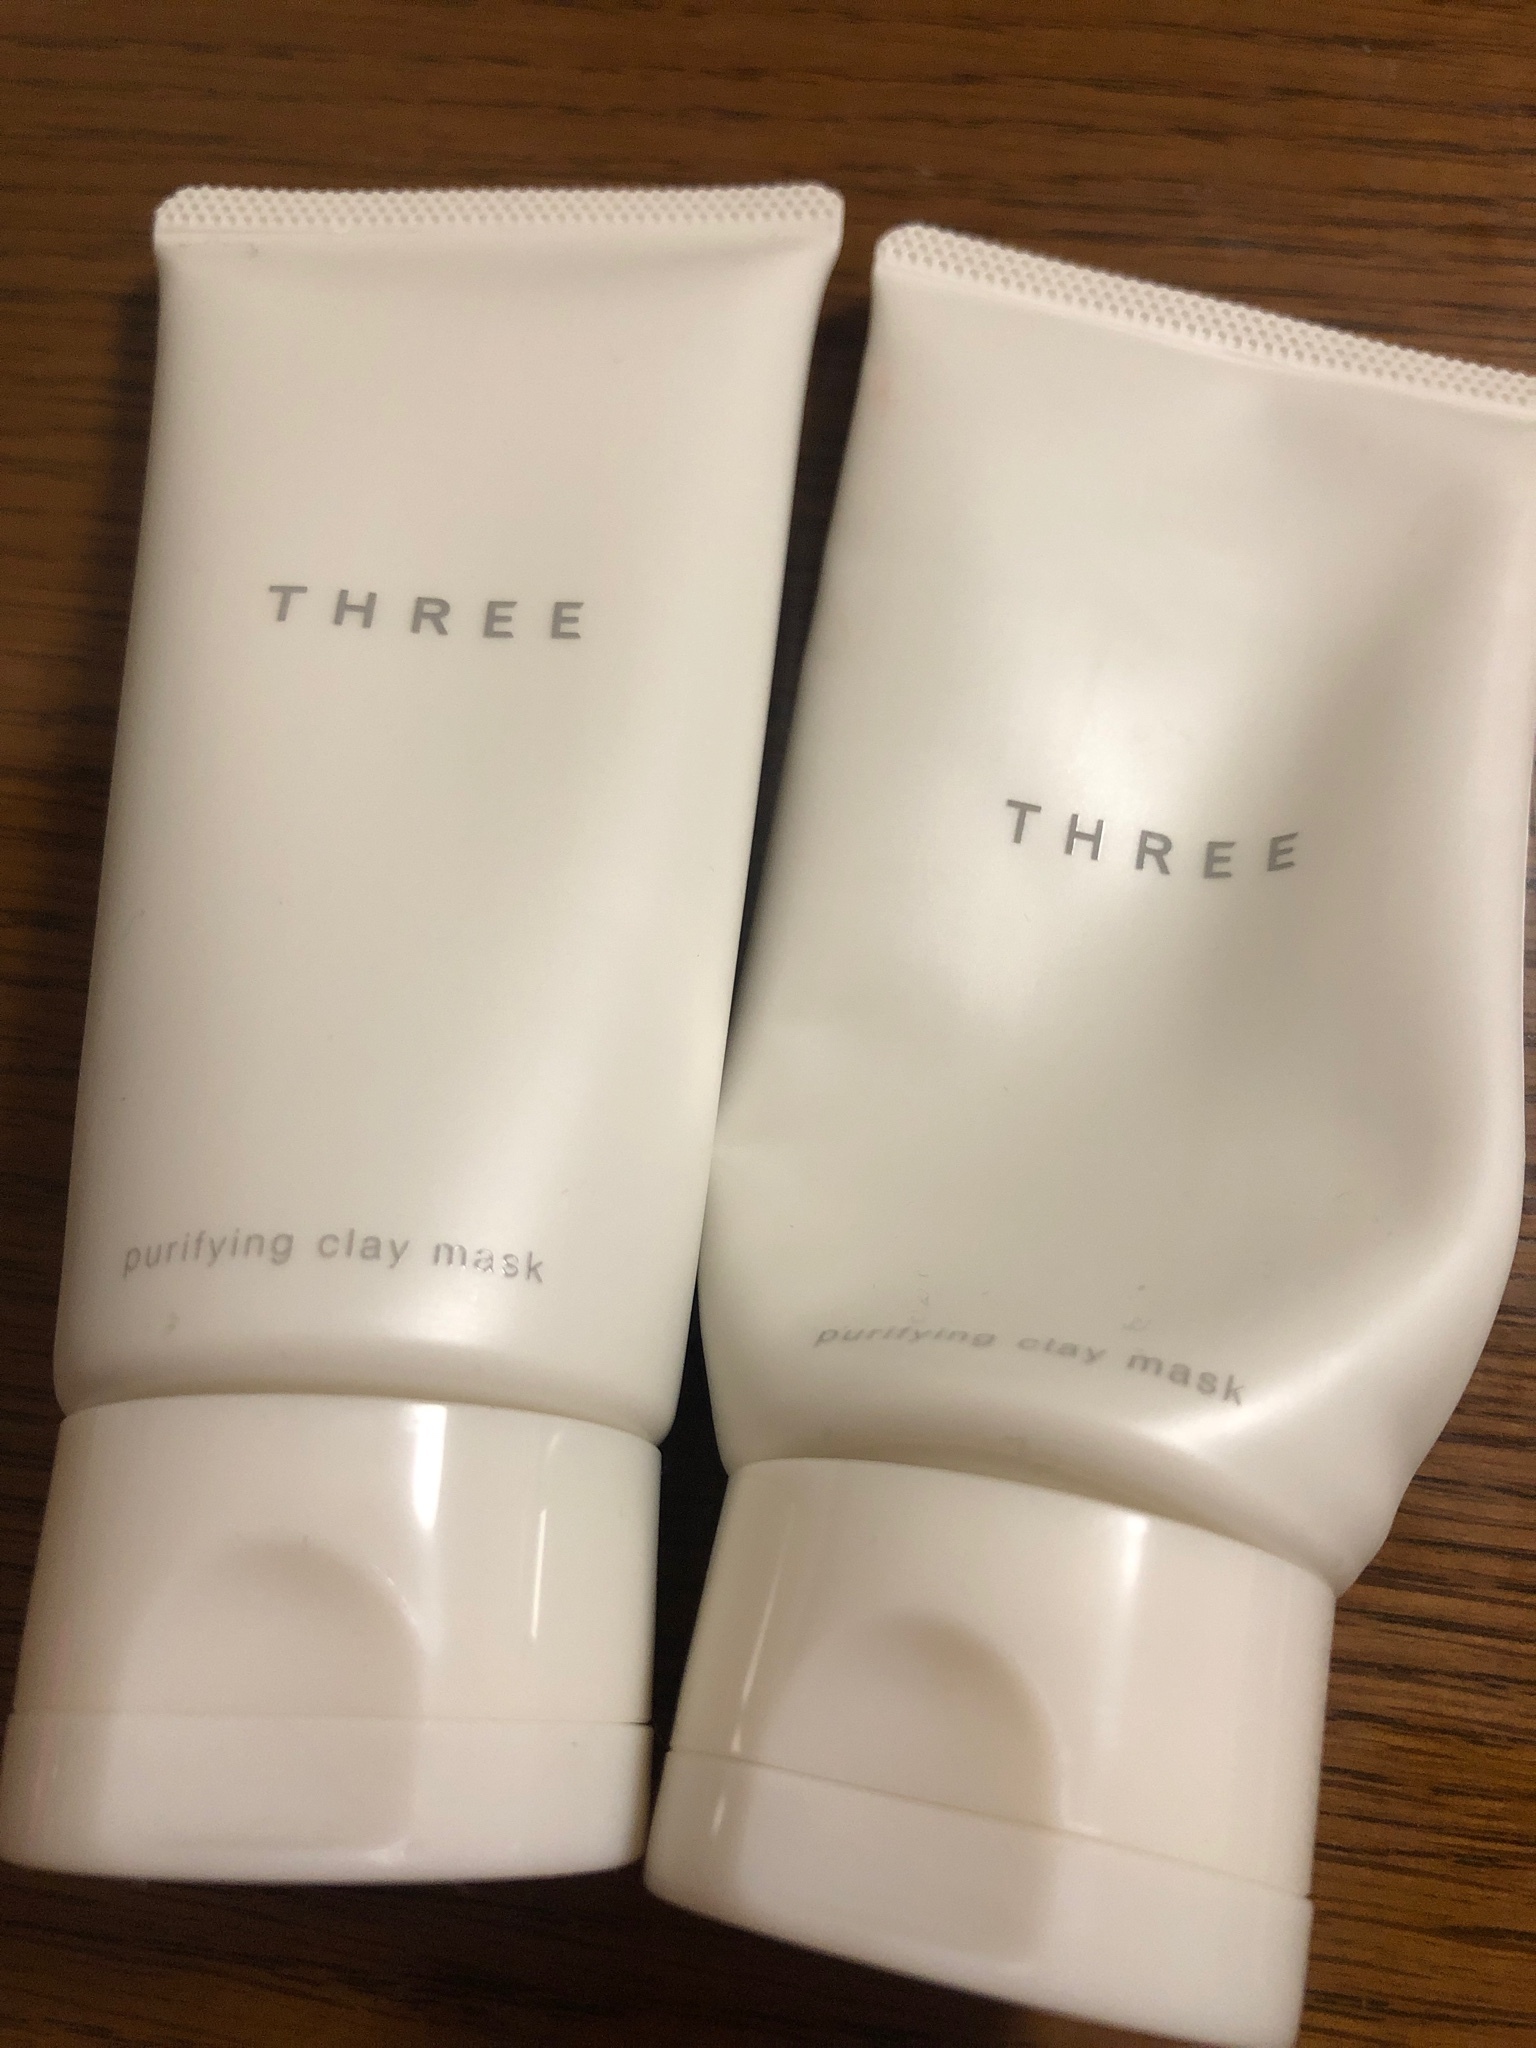 THREE / ピュリファイング クレイマスクの公式商品情報｜美容・化粧品 